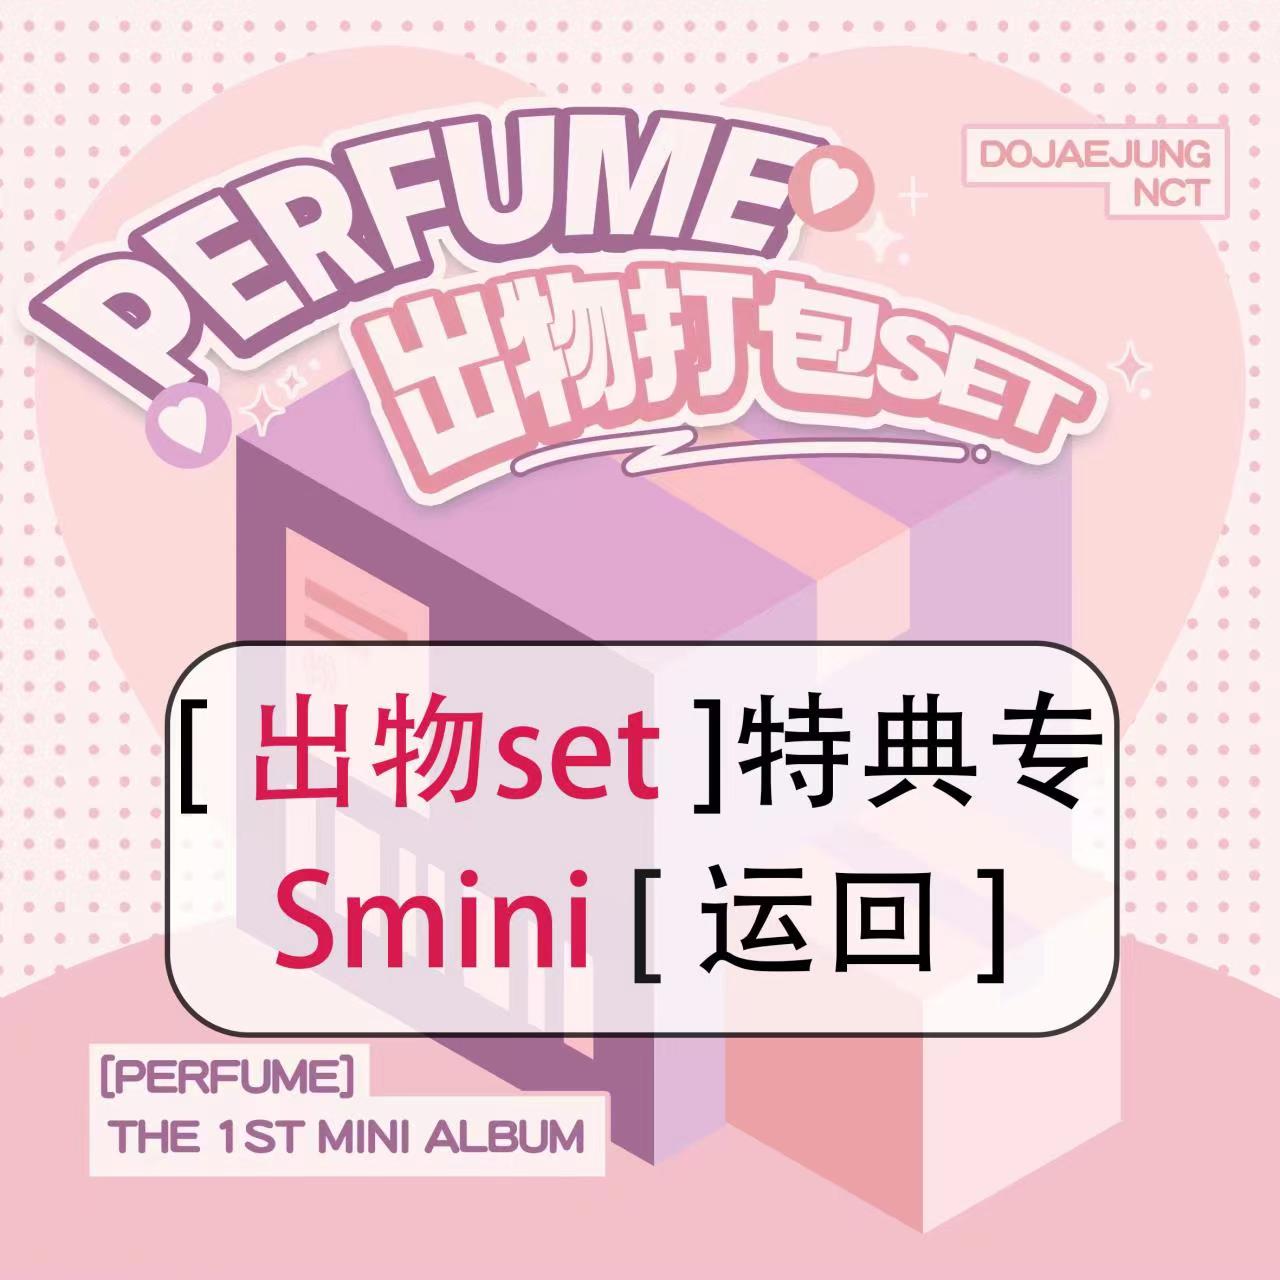 [全款 出物打包set 特典专] NCT DOJAEJUNG - 迷你1辑 [Perfume] (SMini Ver.) (Smart Album) (随机版本)_道英吧_DoYoungBar